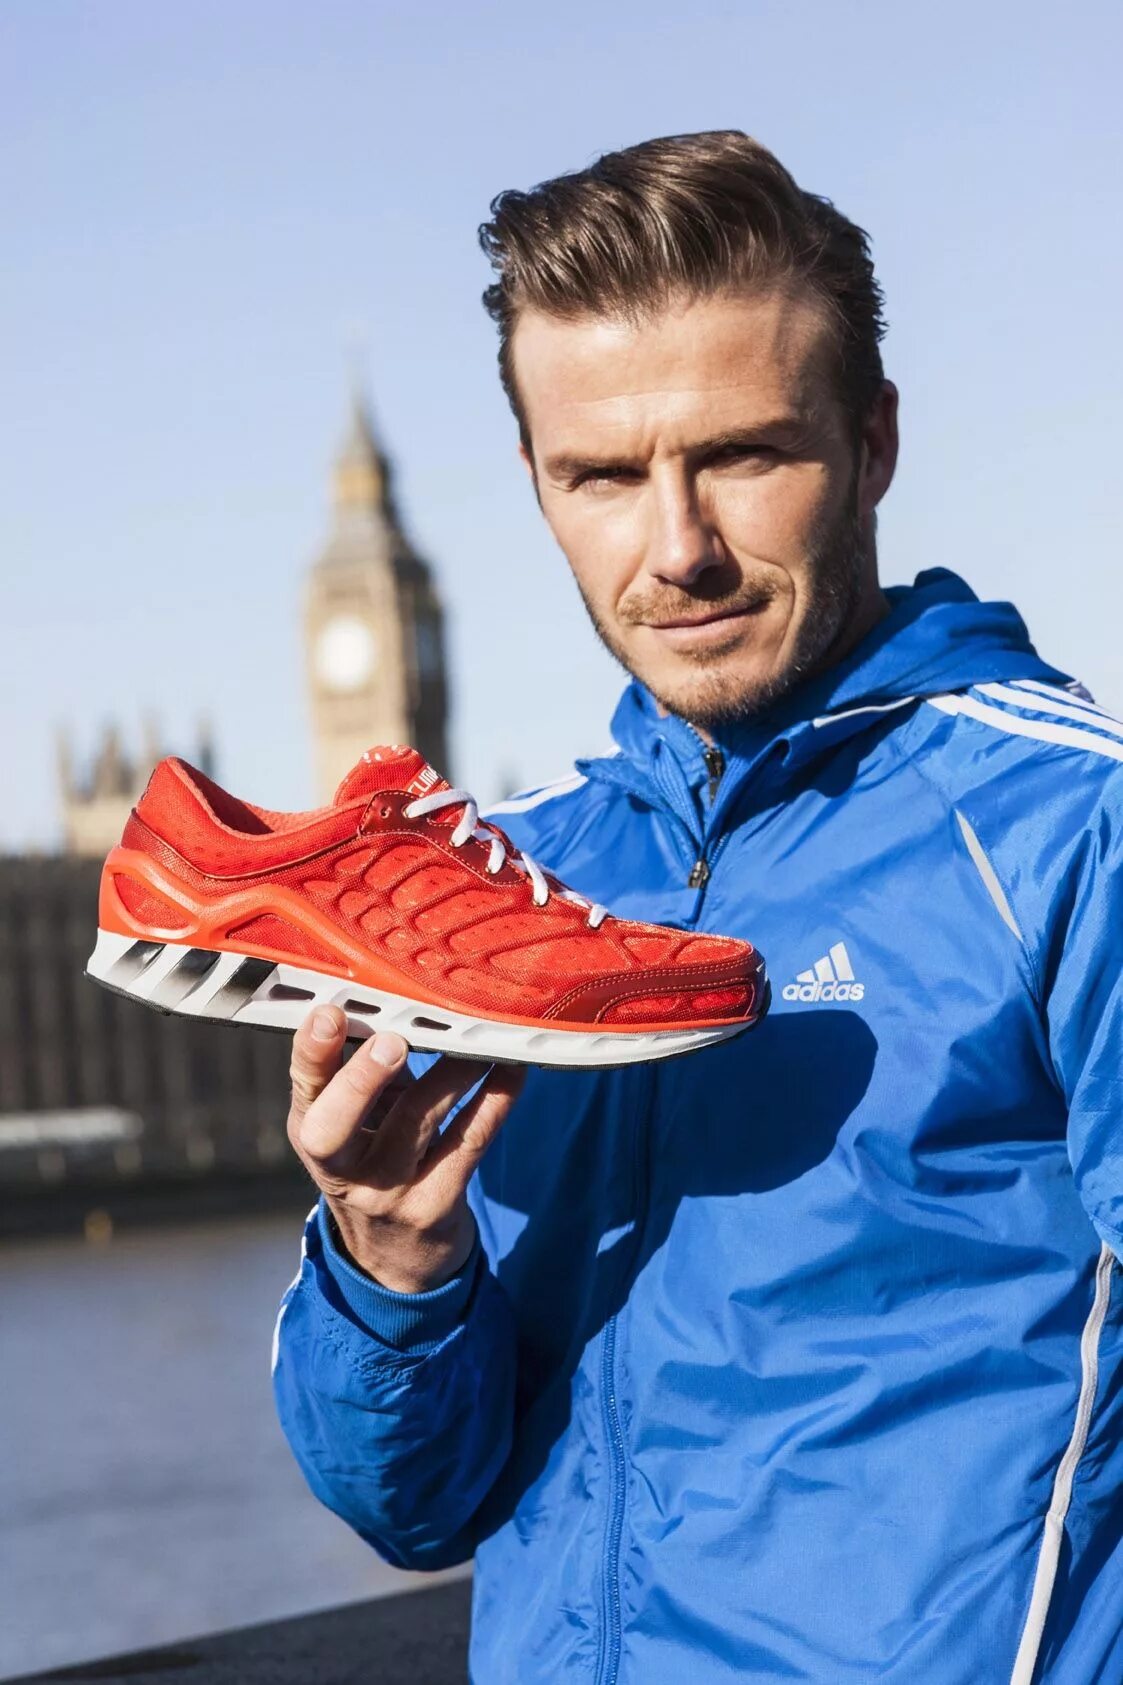 Дэвид Бекхэм адидас. Adidas David Beckham кроссовки. Climacool adidas David Beckham. Дэвид Бекхэм реклама адидас. Лицо адидаса